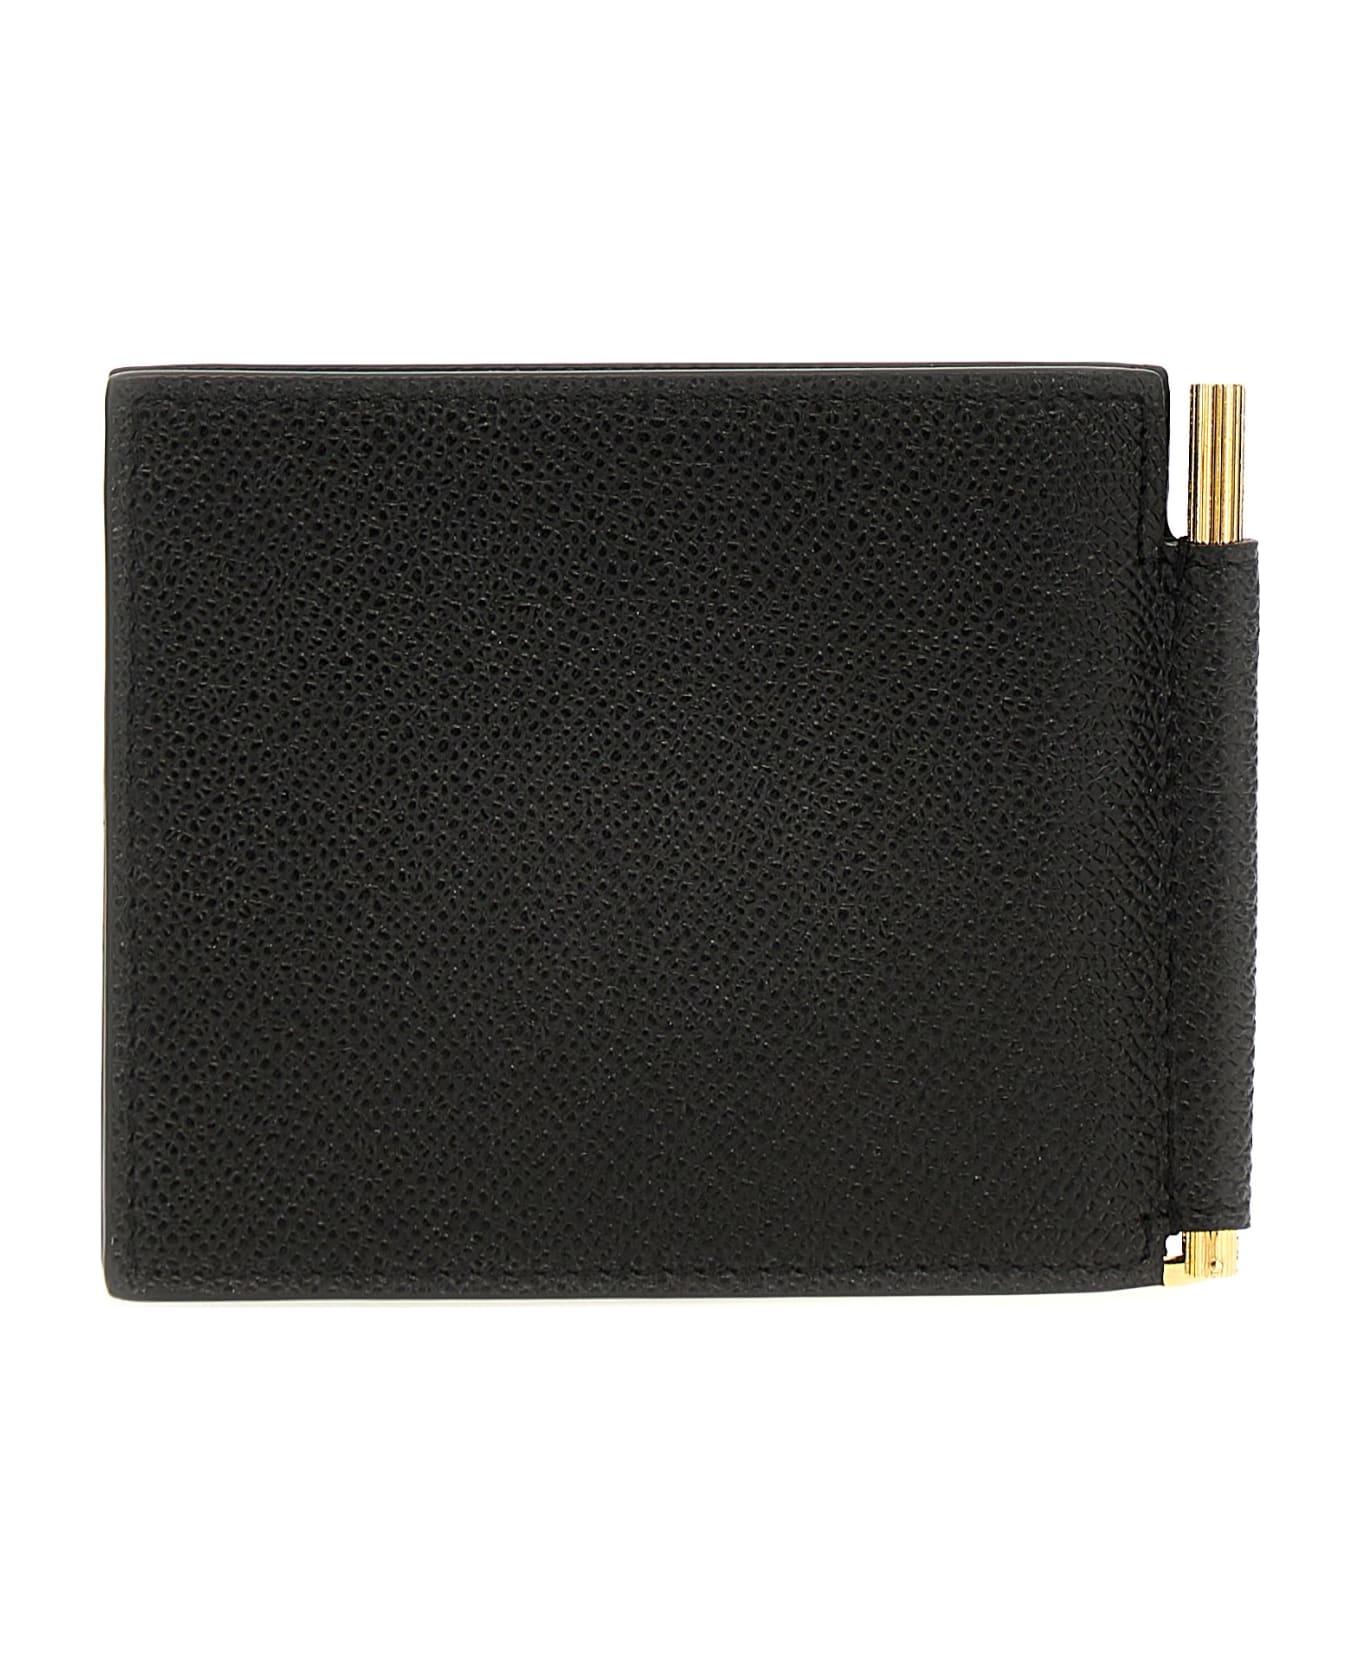 Tom Ford Logo Leather Cardholder - Black 財布